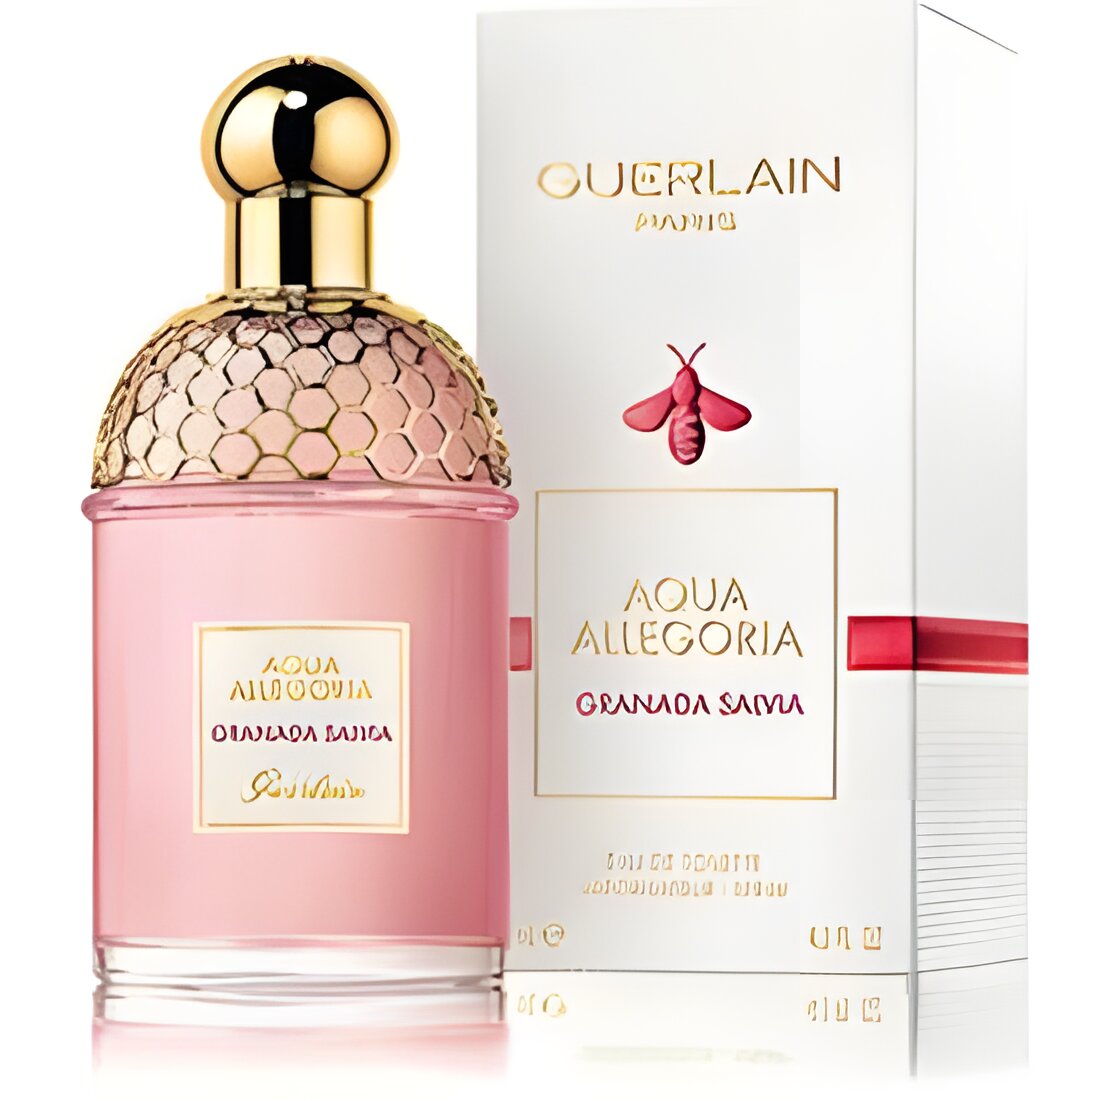 Free Guerlain Fragrance Sample